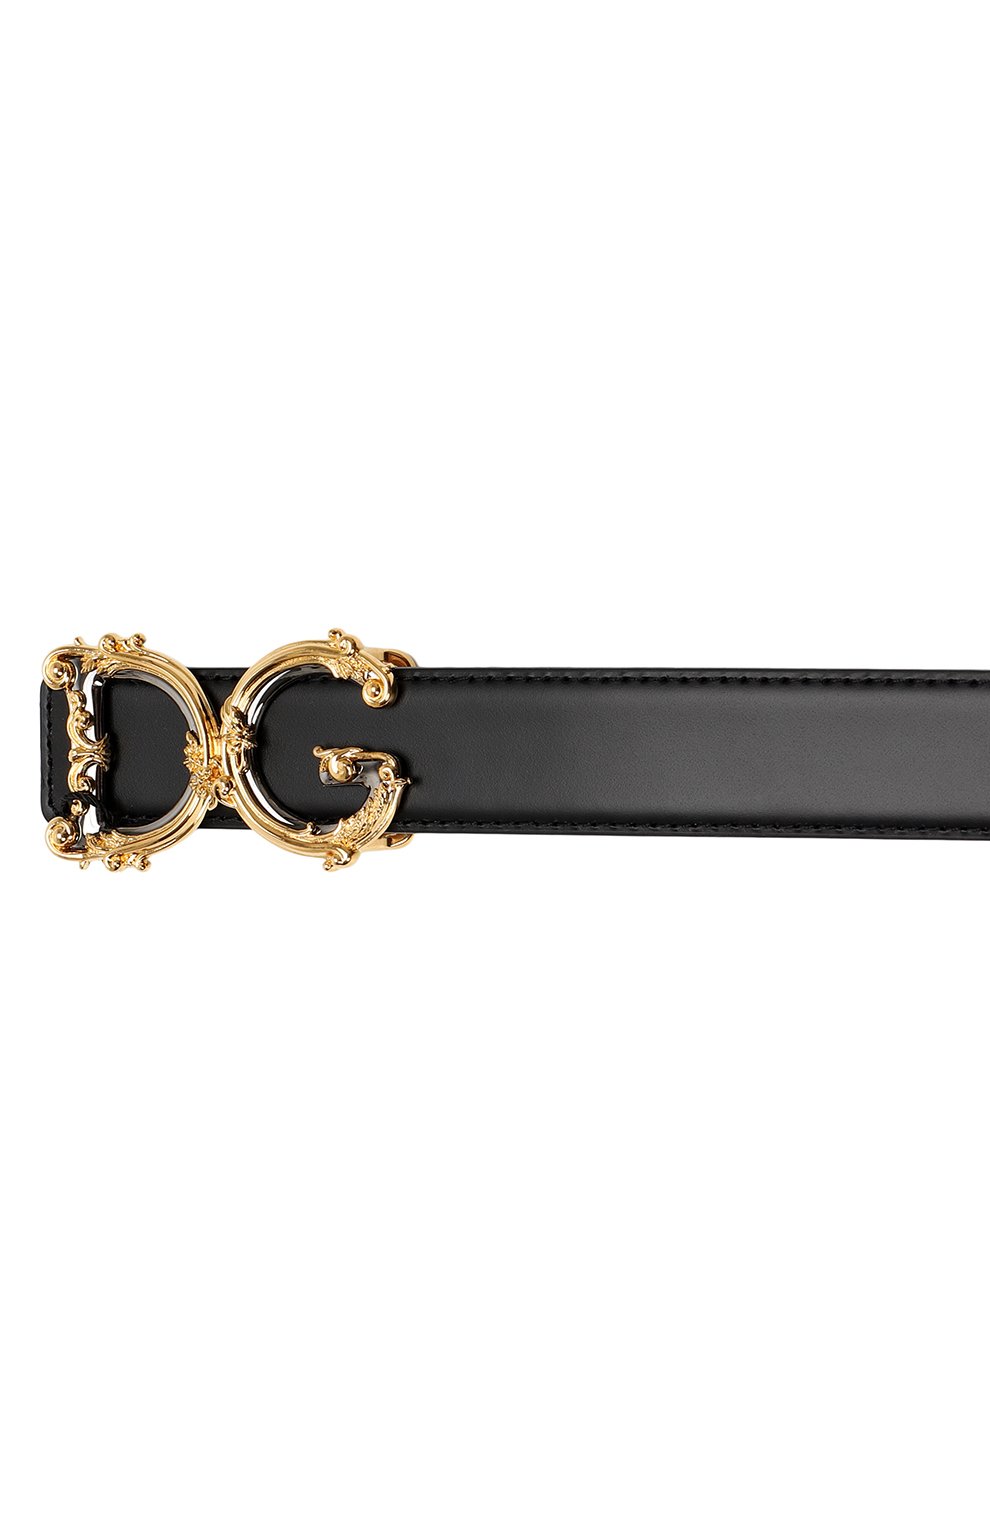 Кожаный ремень | Dolce & Gabbana | Чёрный - 3